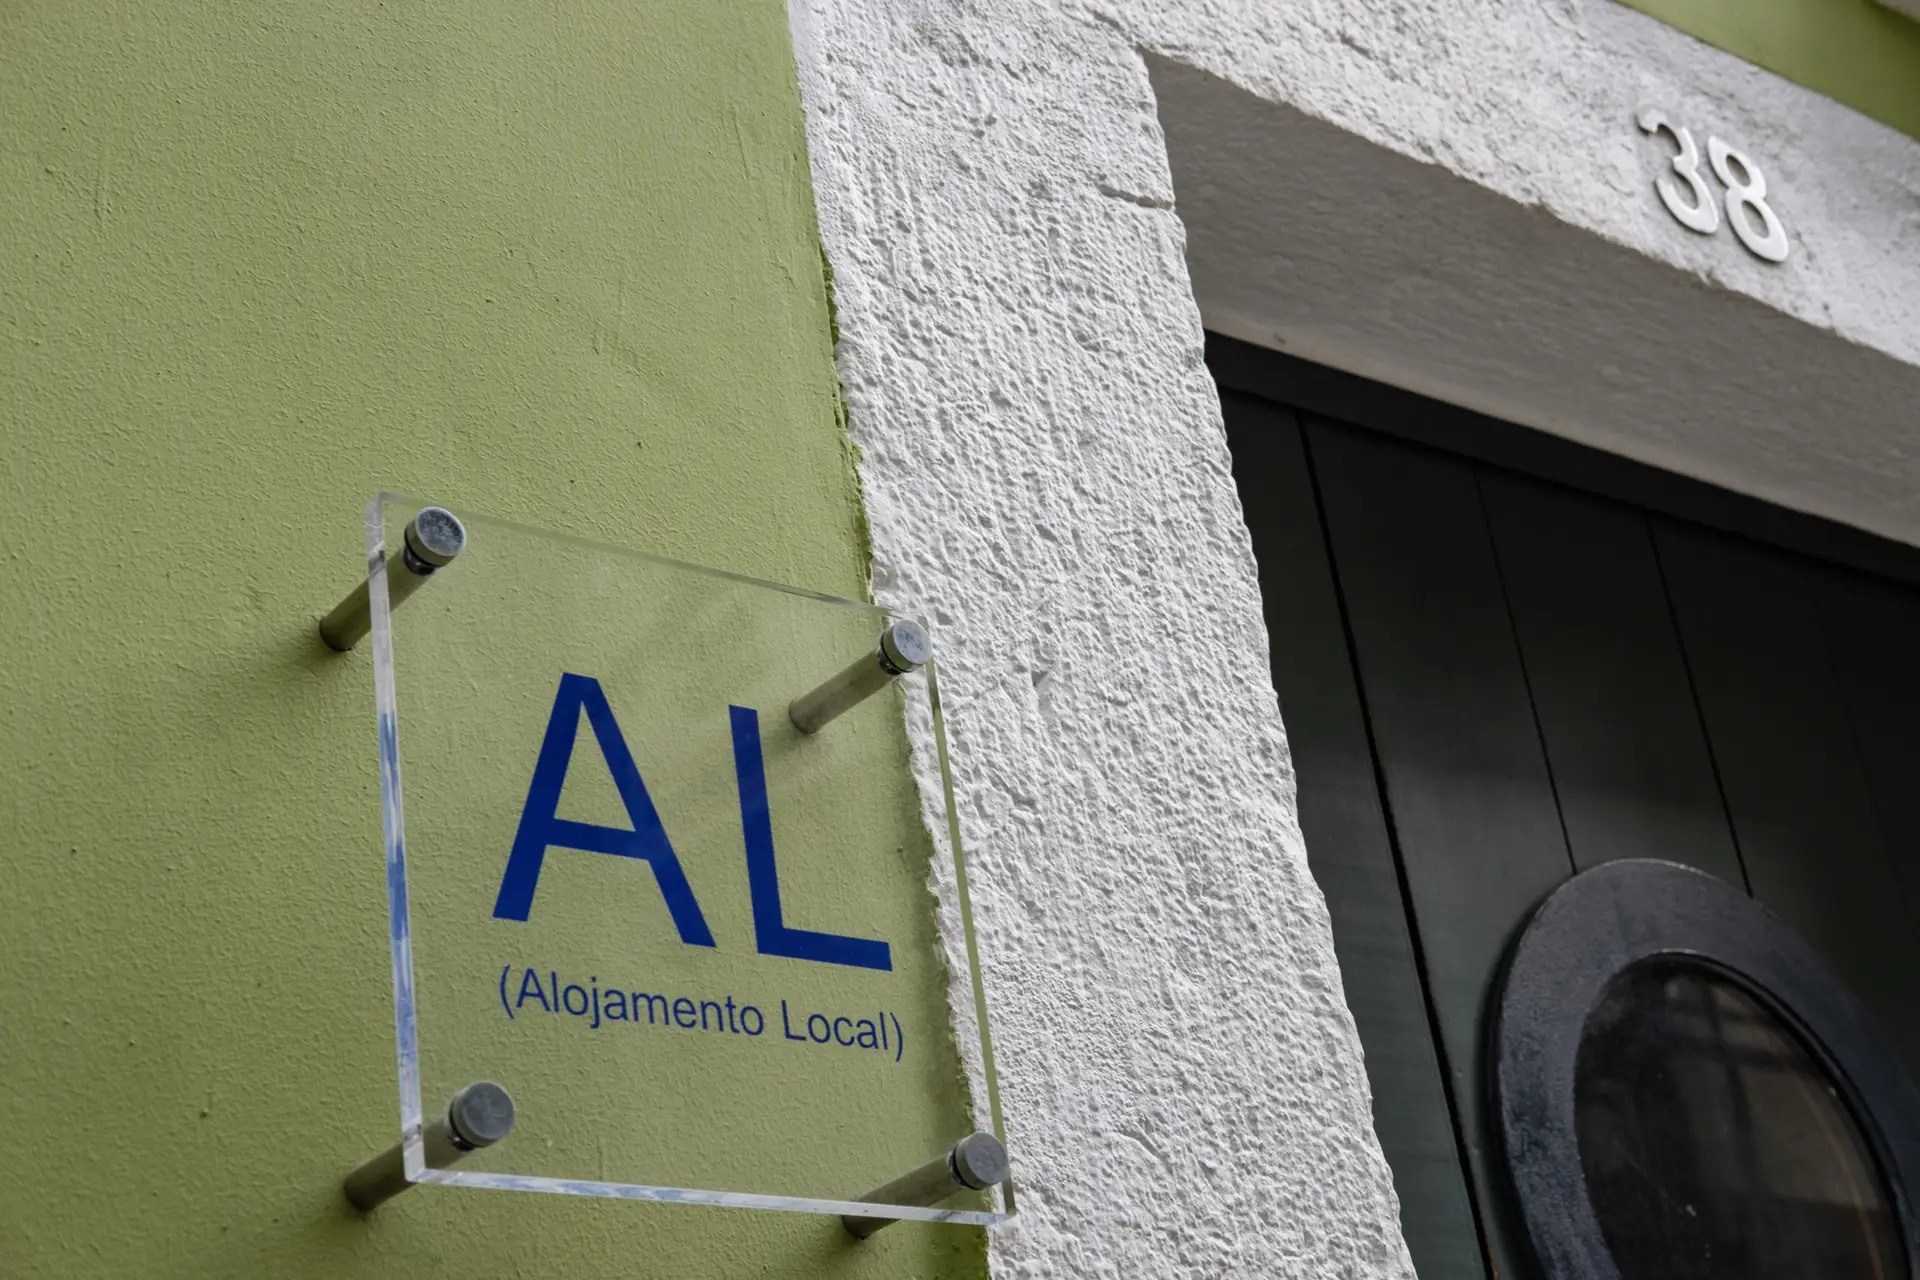 Alojamento Local: quais as freguesias de Lisboa e Porto que sofreram as maiores quedas nos últimos três anos?